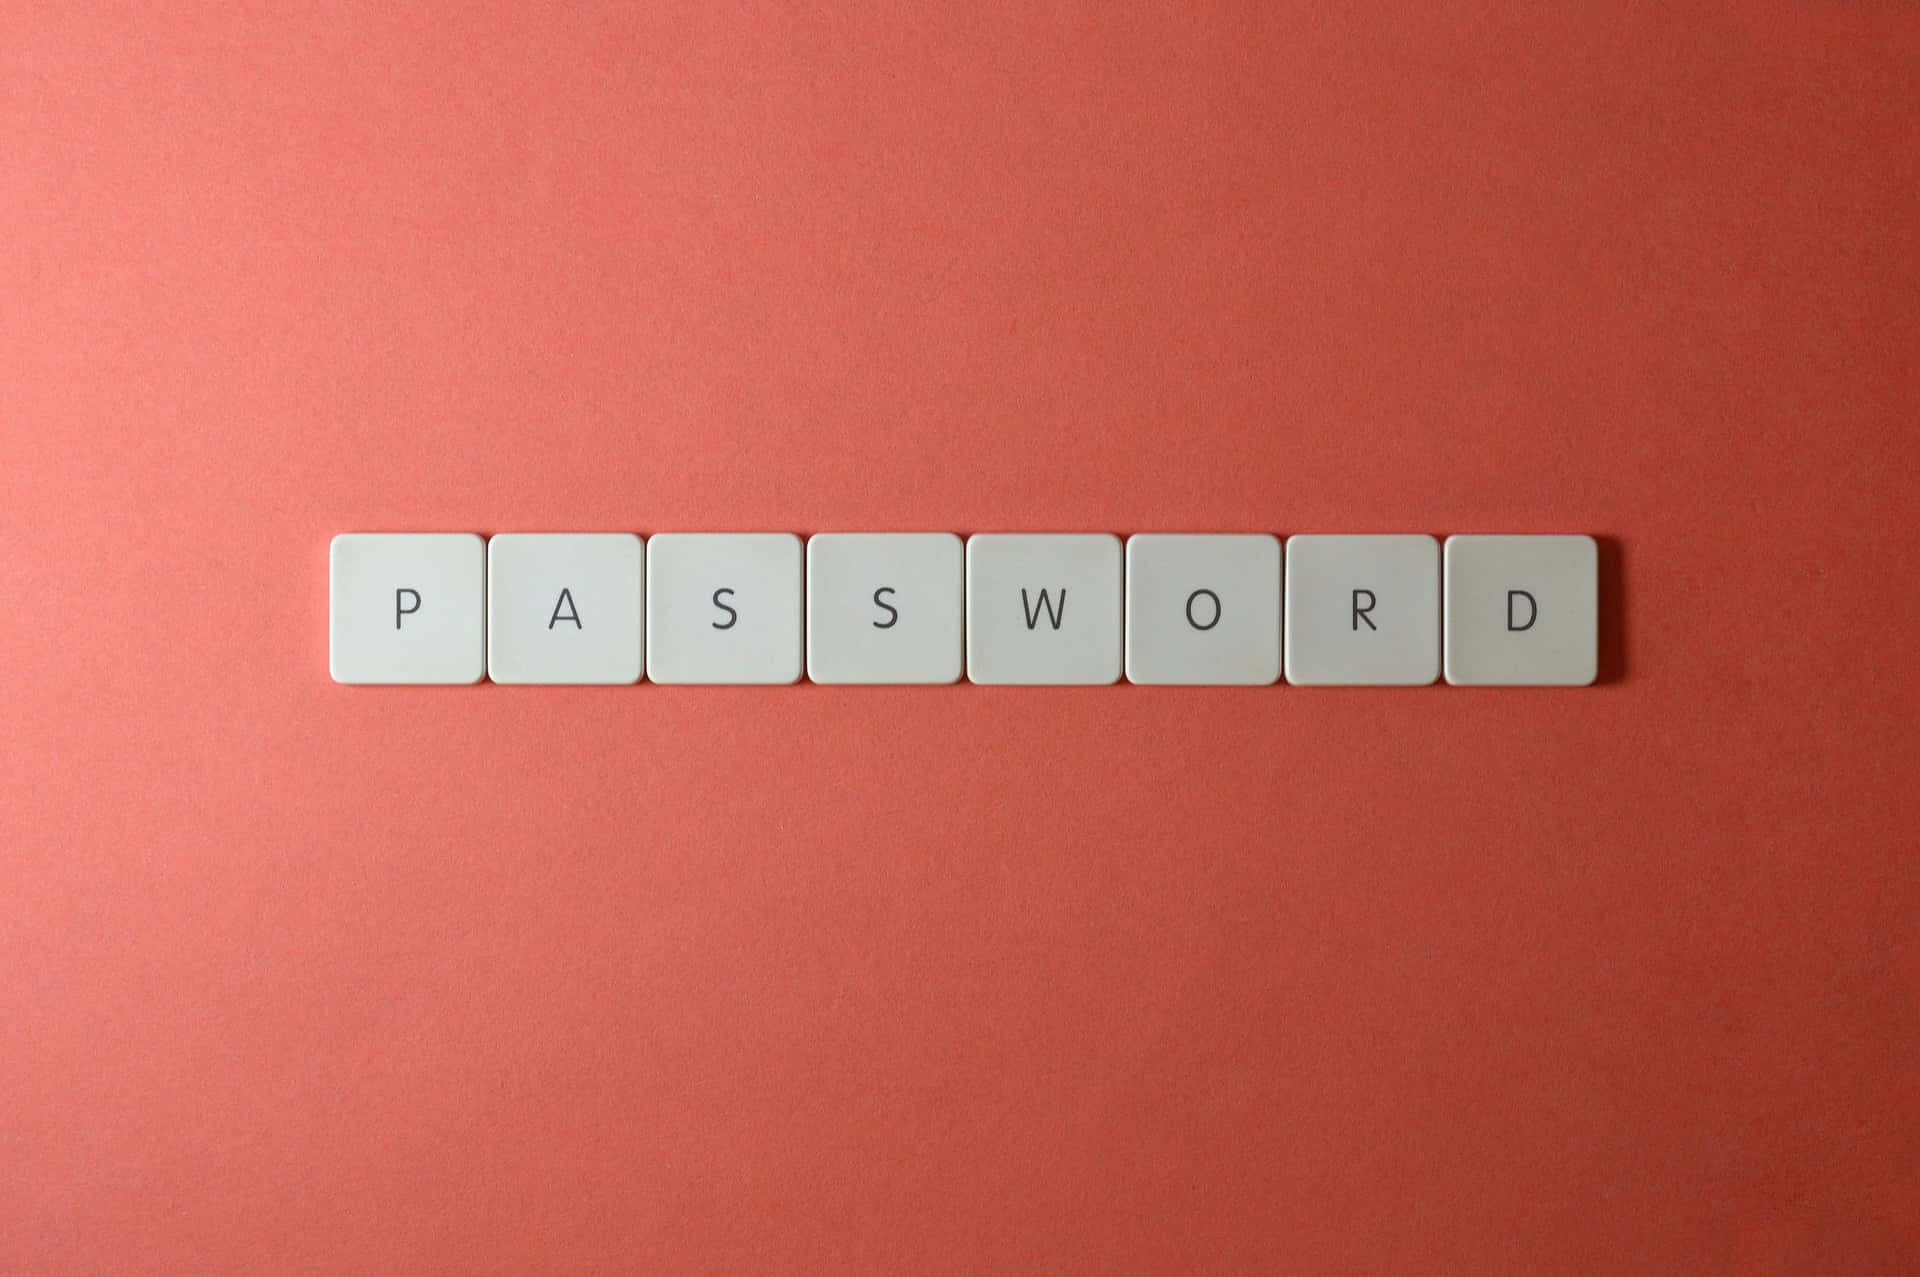 Password Wallpaper